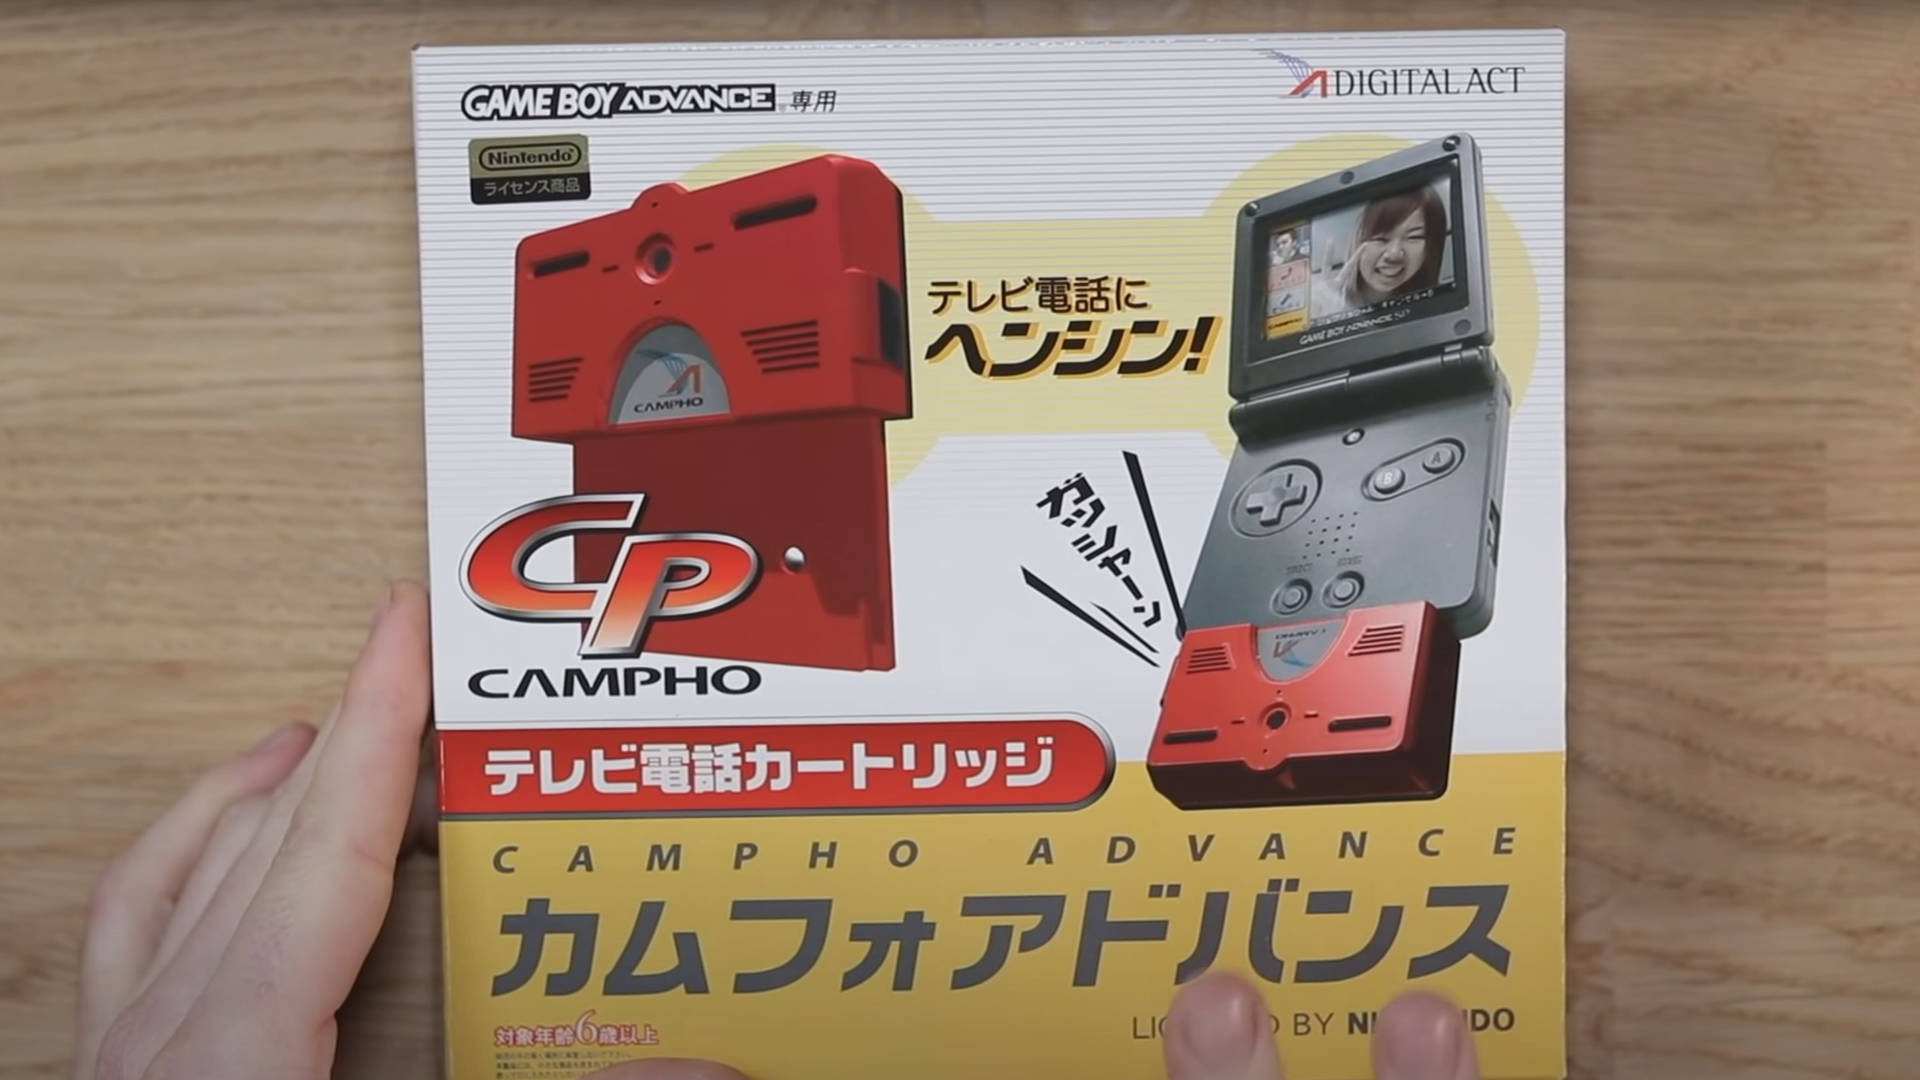 Videotelefonie mit dem Game Boy Advance